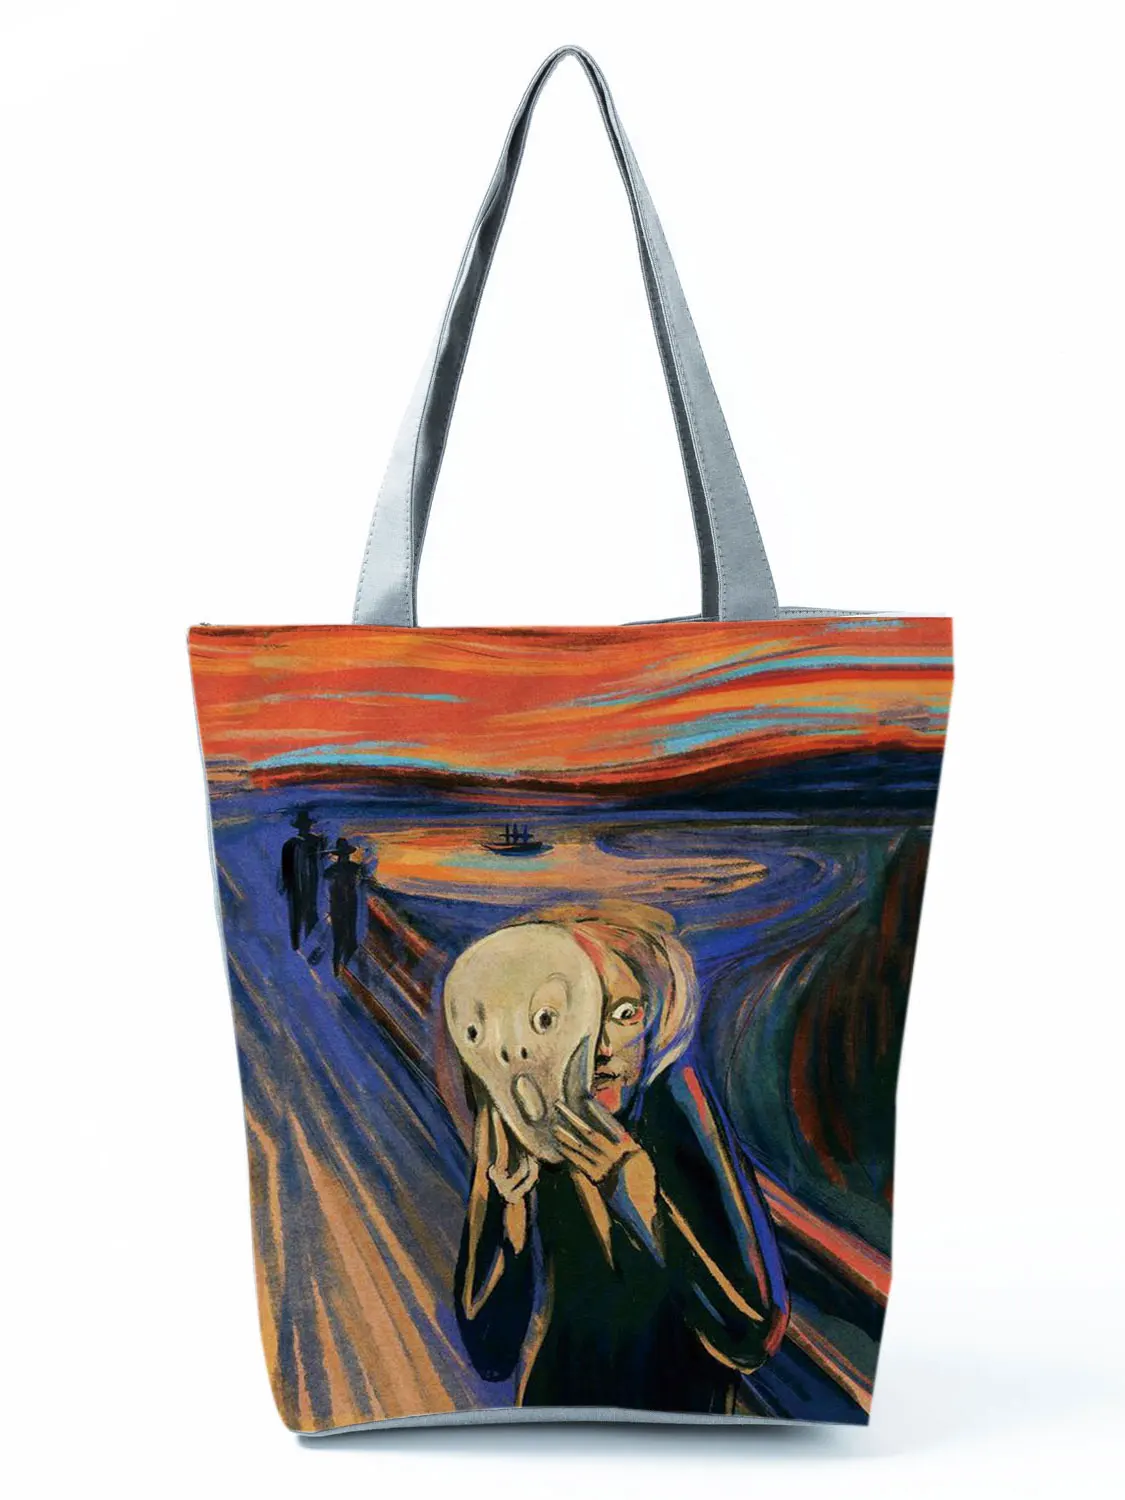 New Van Gogh Oil Painti Tote Bag Retro Art Fashion Travel Bag Women Leisure Eco Shopping High Quality Foldable Handbags Portable 